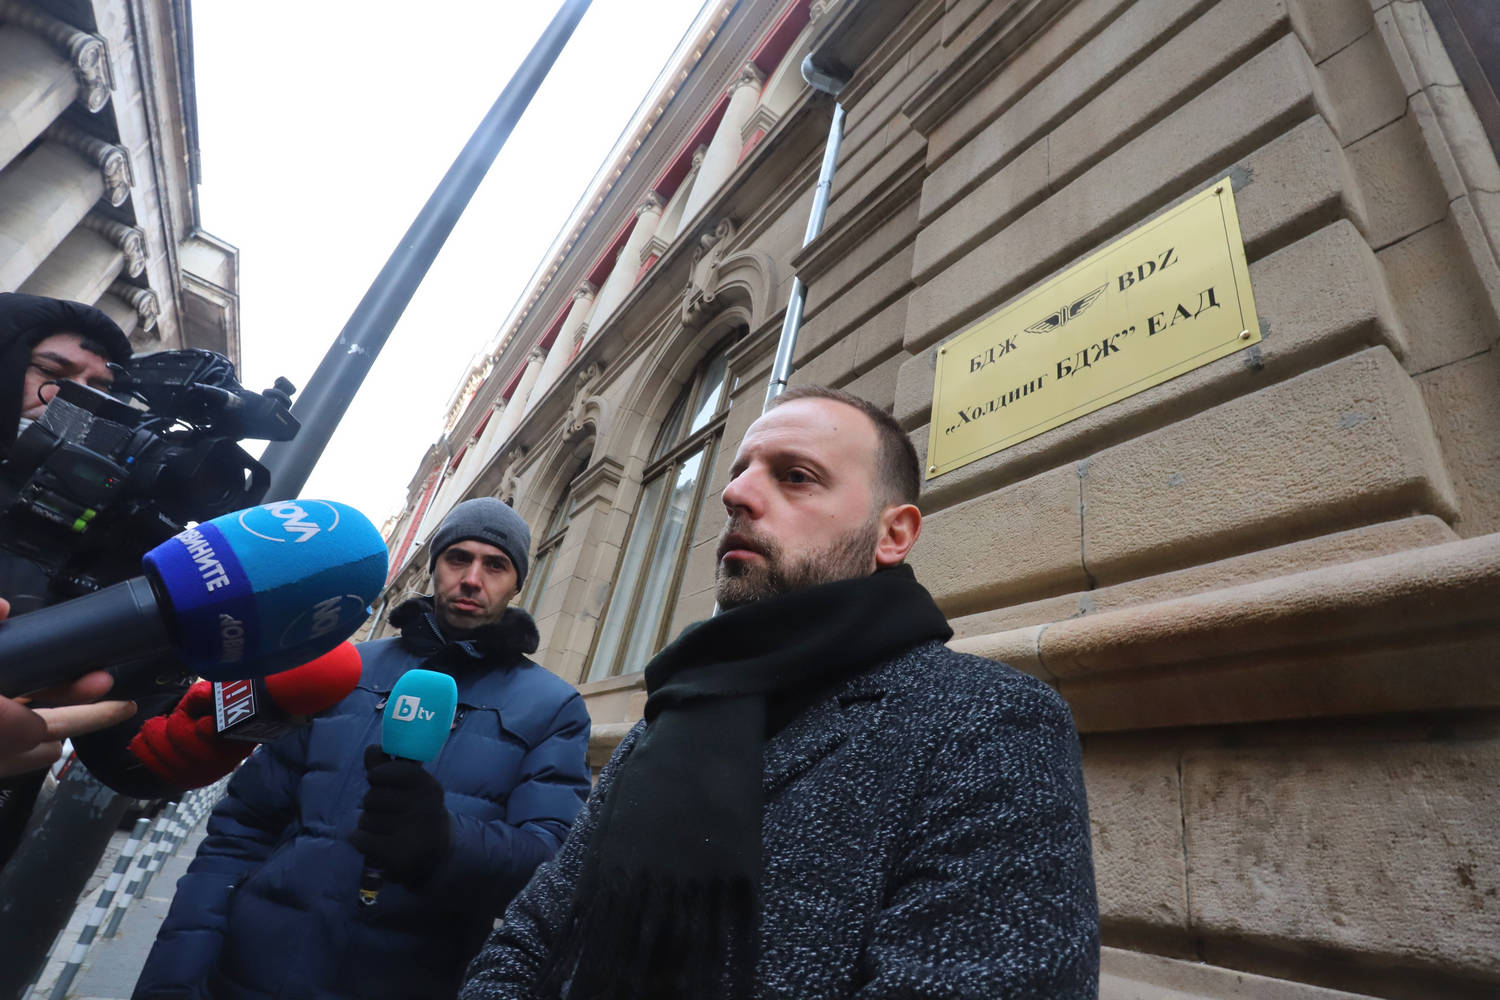 Държавното обвинение влезе в БДЖ вчера Представители на Софийската градска